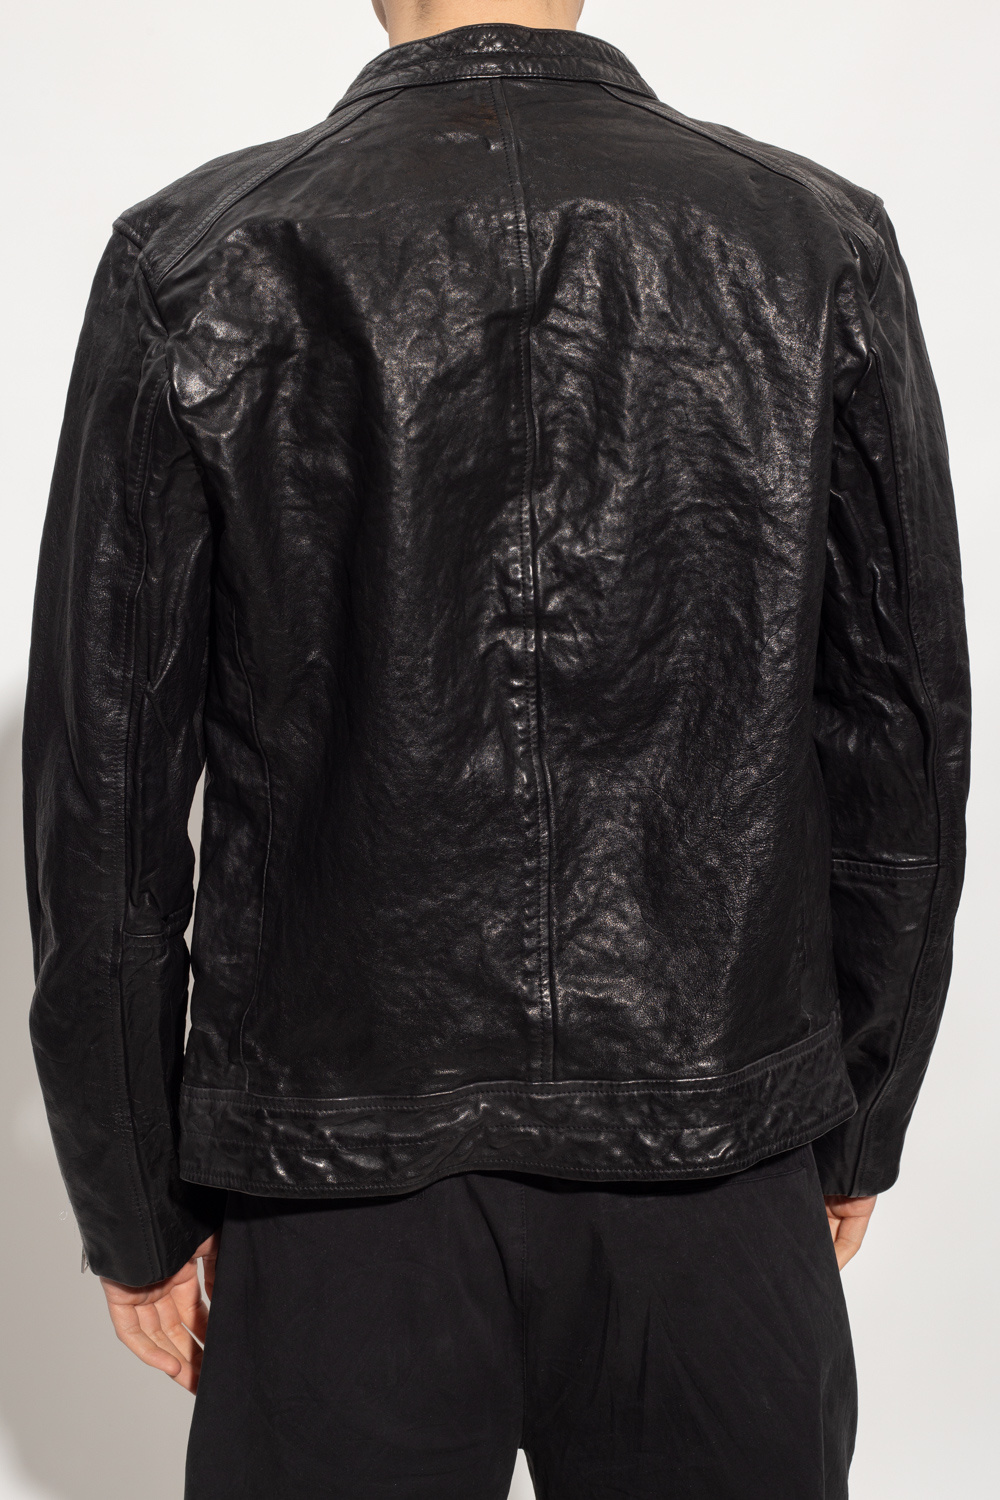 AllSaints ‘Reo’ leather biker Hoodie jacket